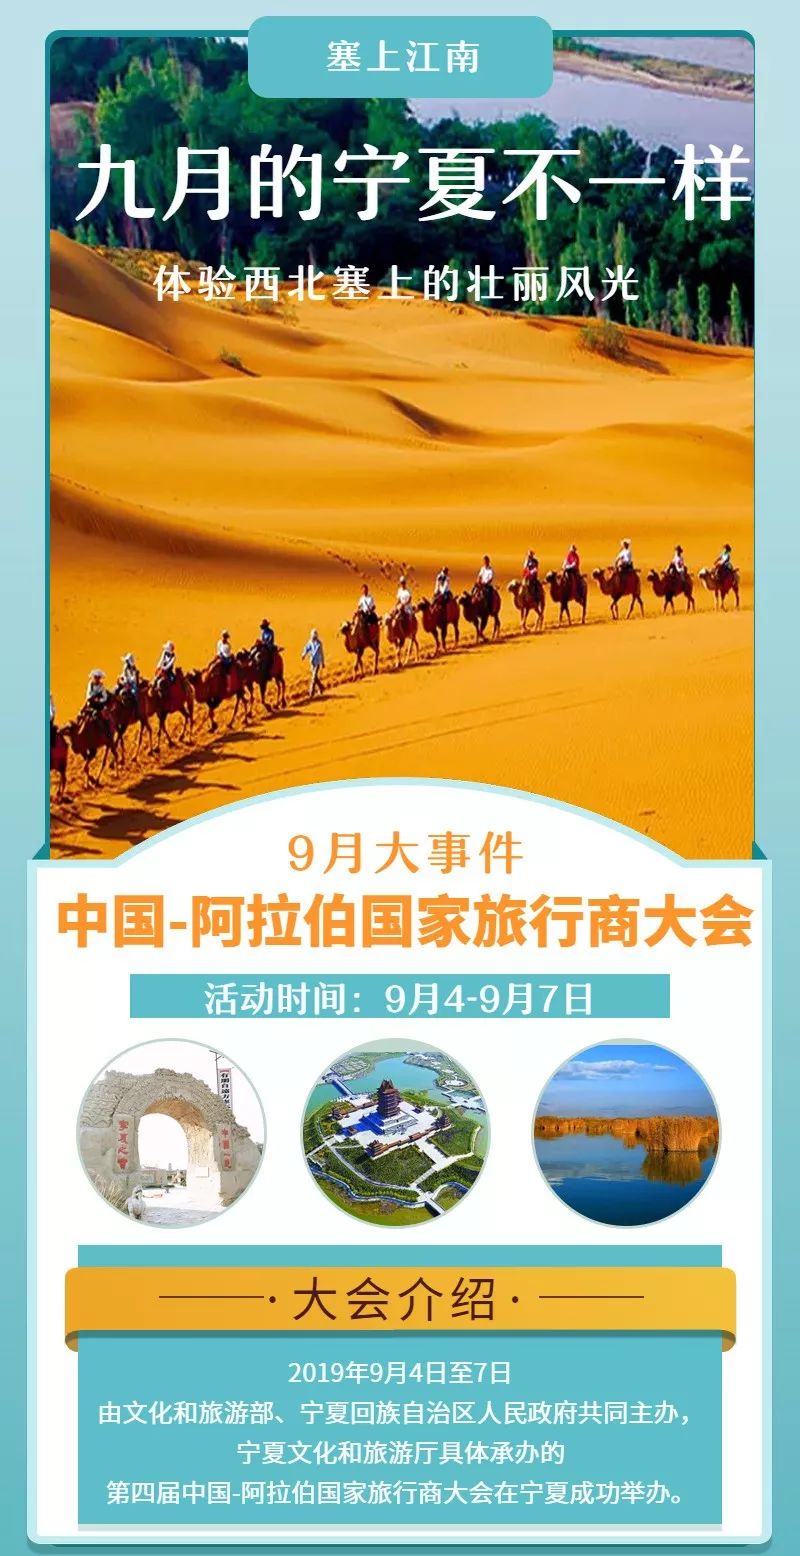 



向世界展示宁夏之美，“塞上江南”引中外旅行商“点赞”！
